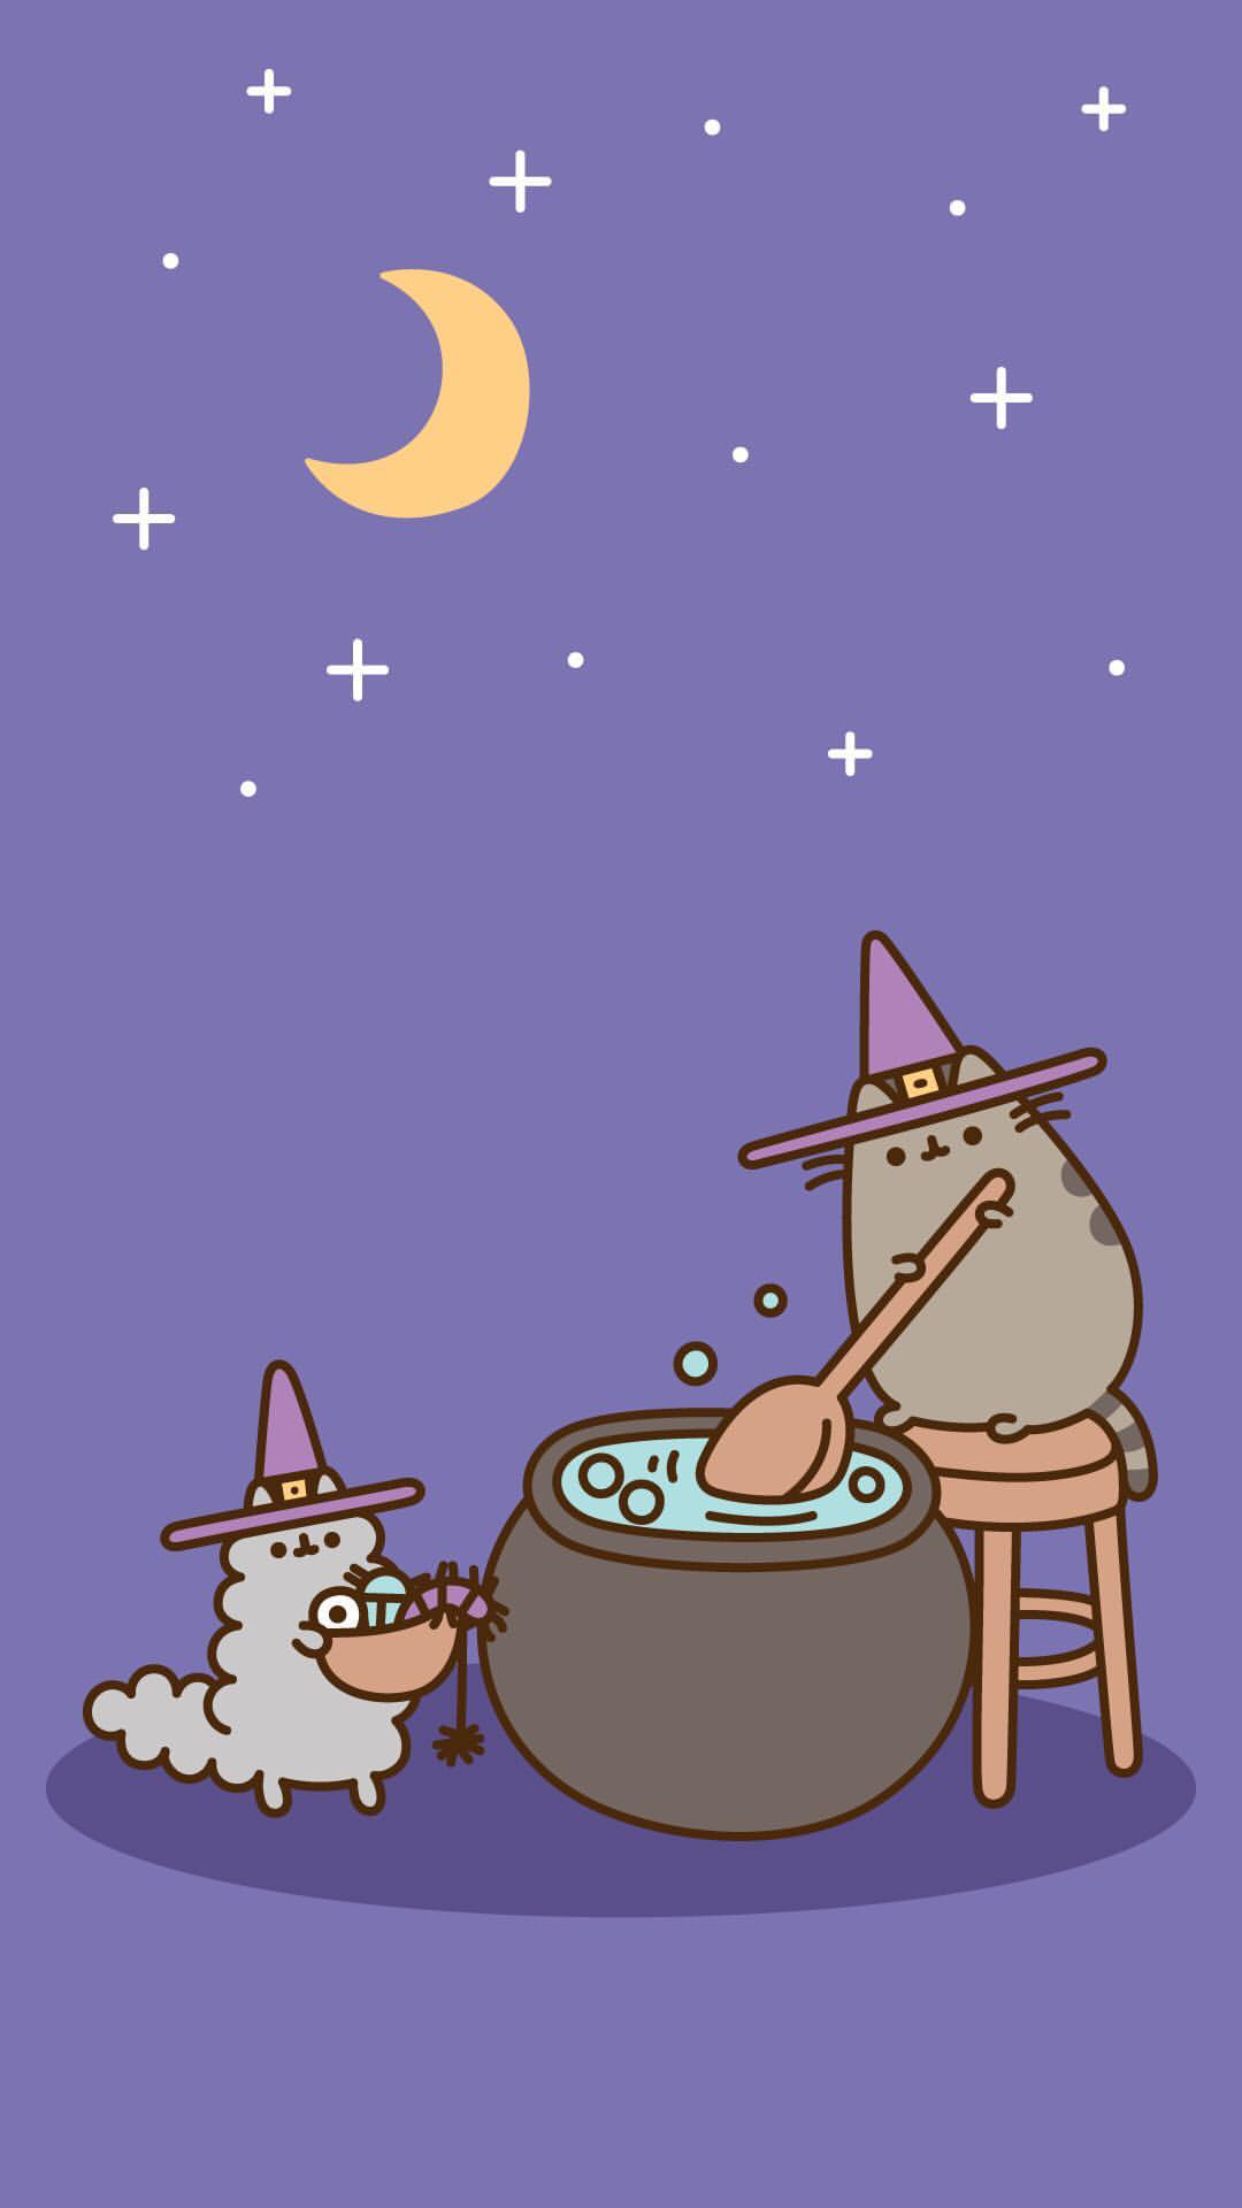 pusheen halloween wallpaper ♡. Pusheen cute, Pusheen cat, Witch wallpaper